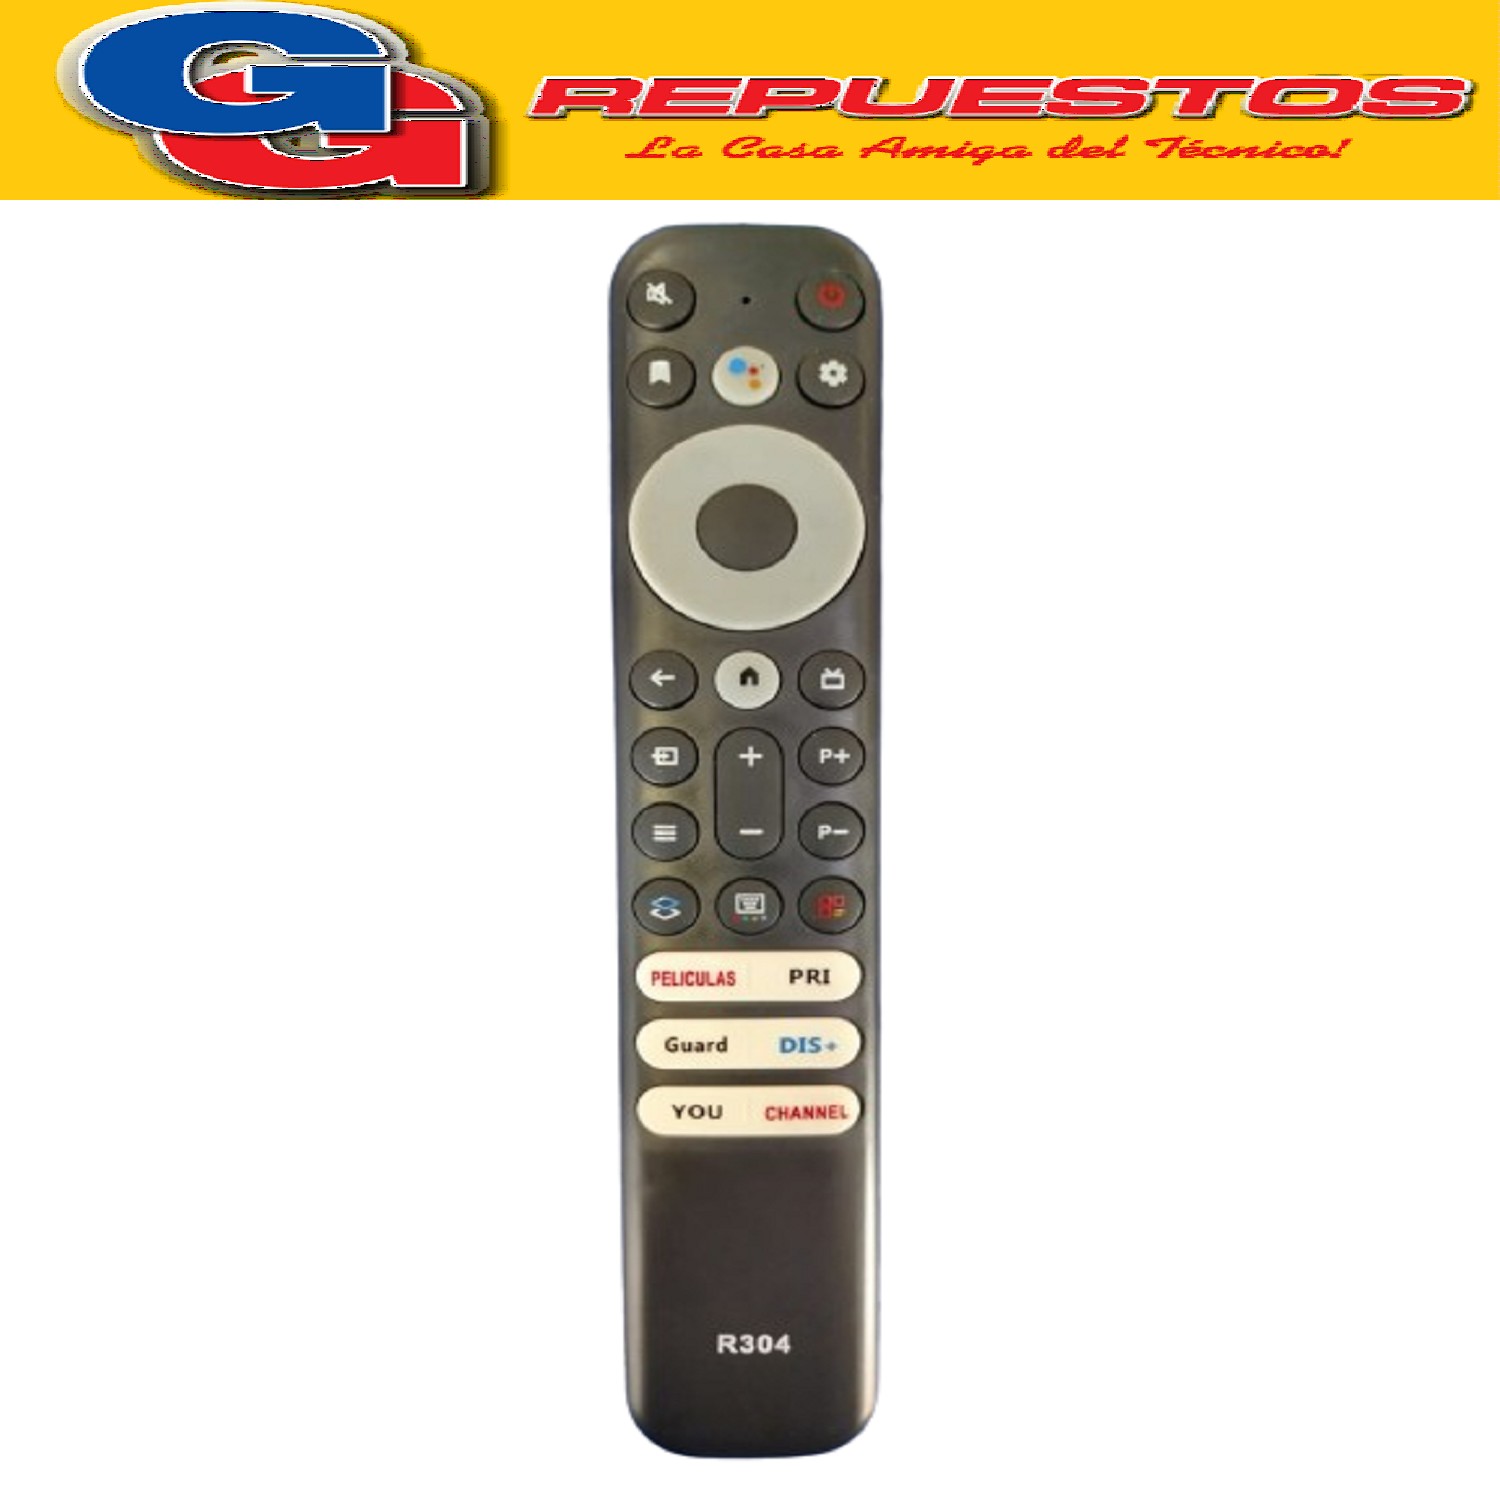 CONTROL REMOTO SMART TV PARA RCA - TCL - ADMIRAL L614 R304